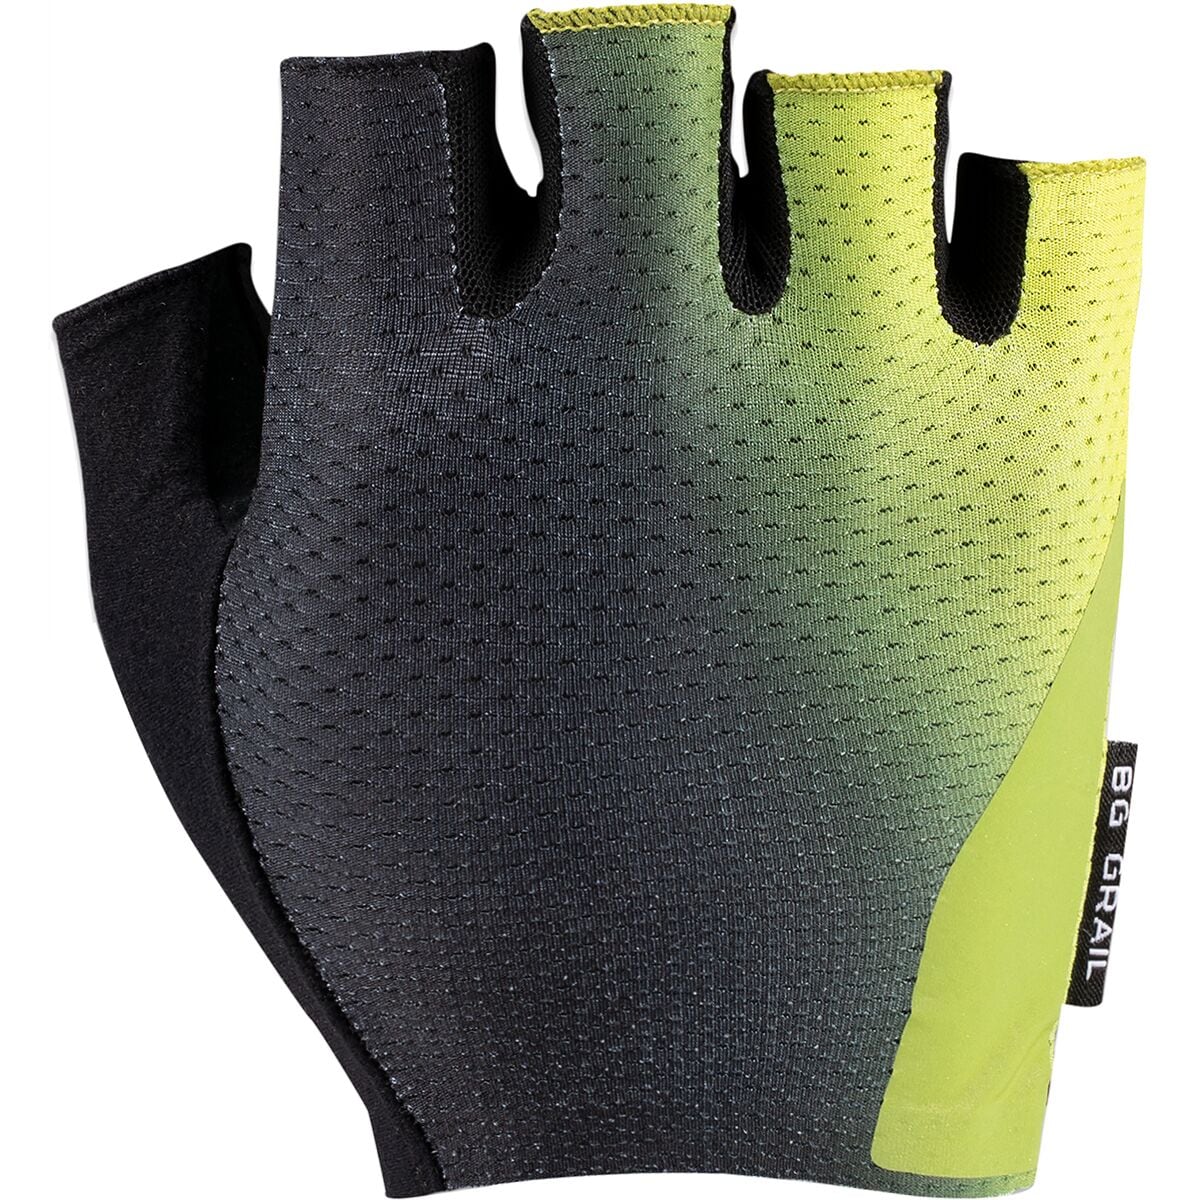 Specialized HyprViz Body Geometry Grail Glove - Men's